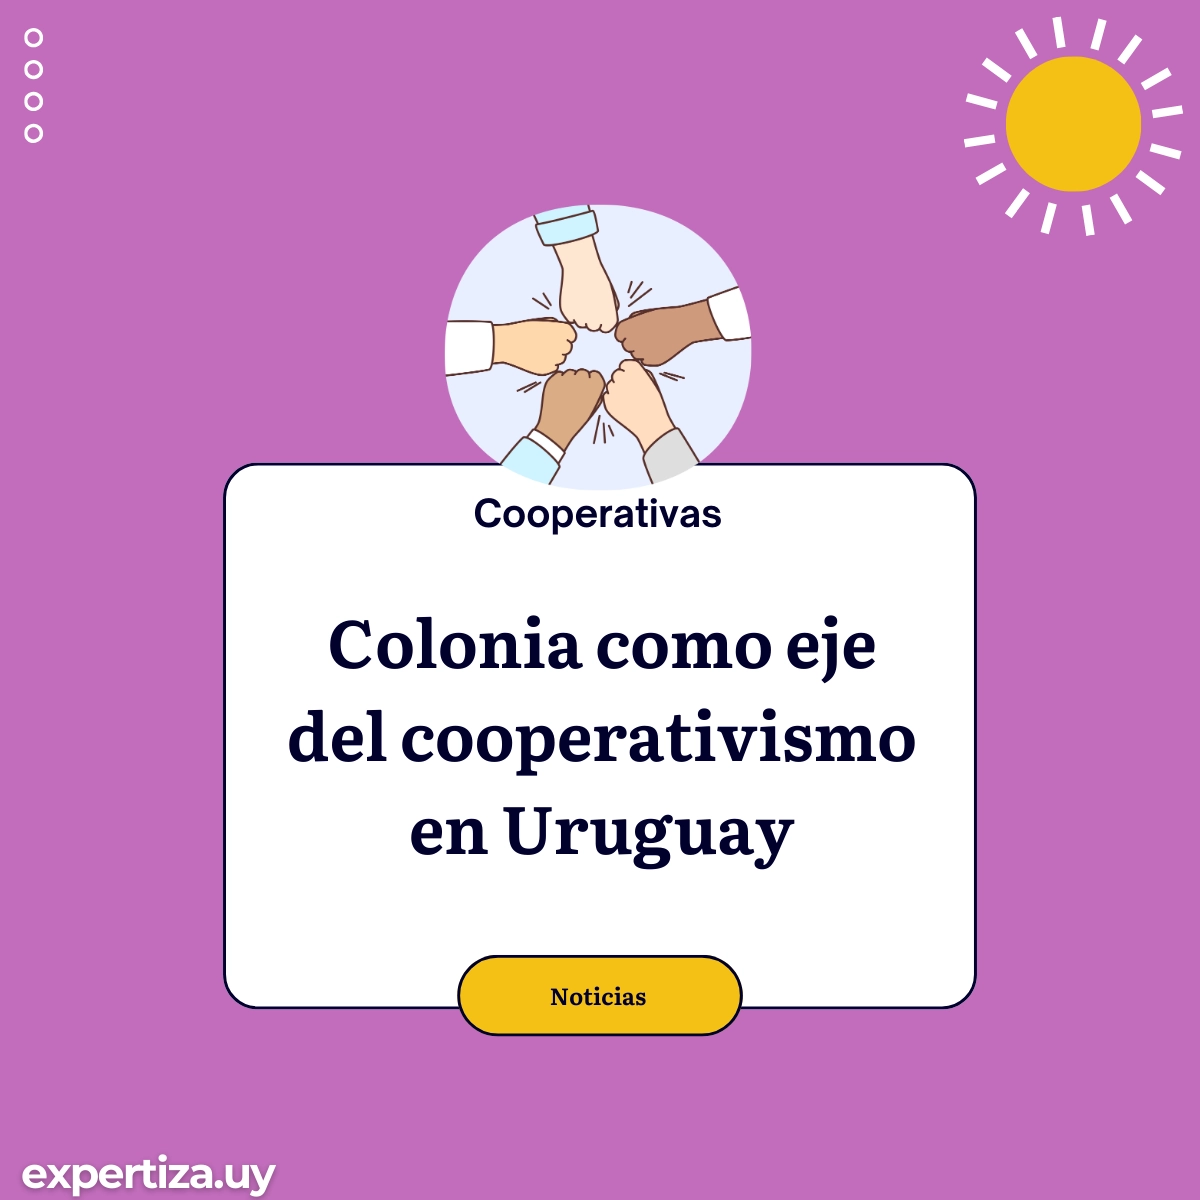 Colonia como eje del cooperativismo en Uruguay.